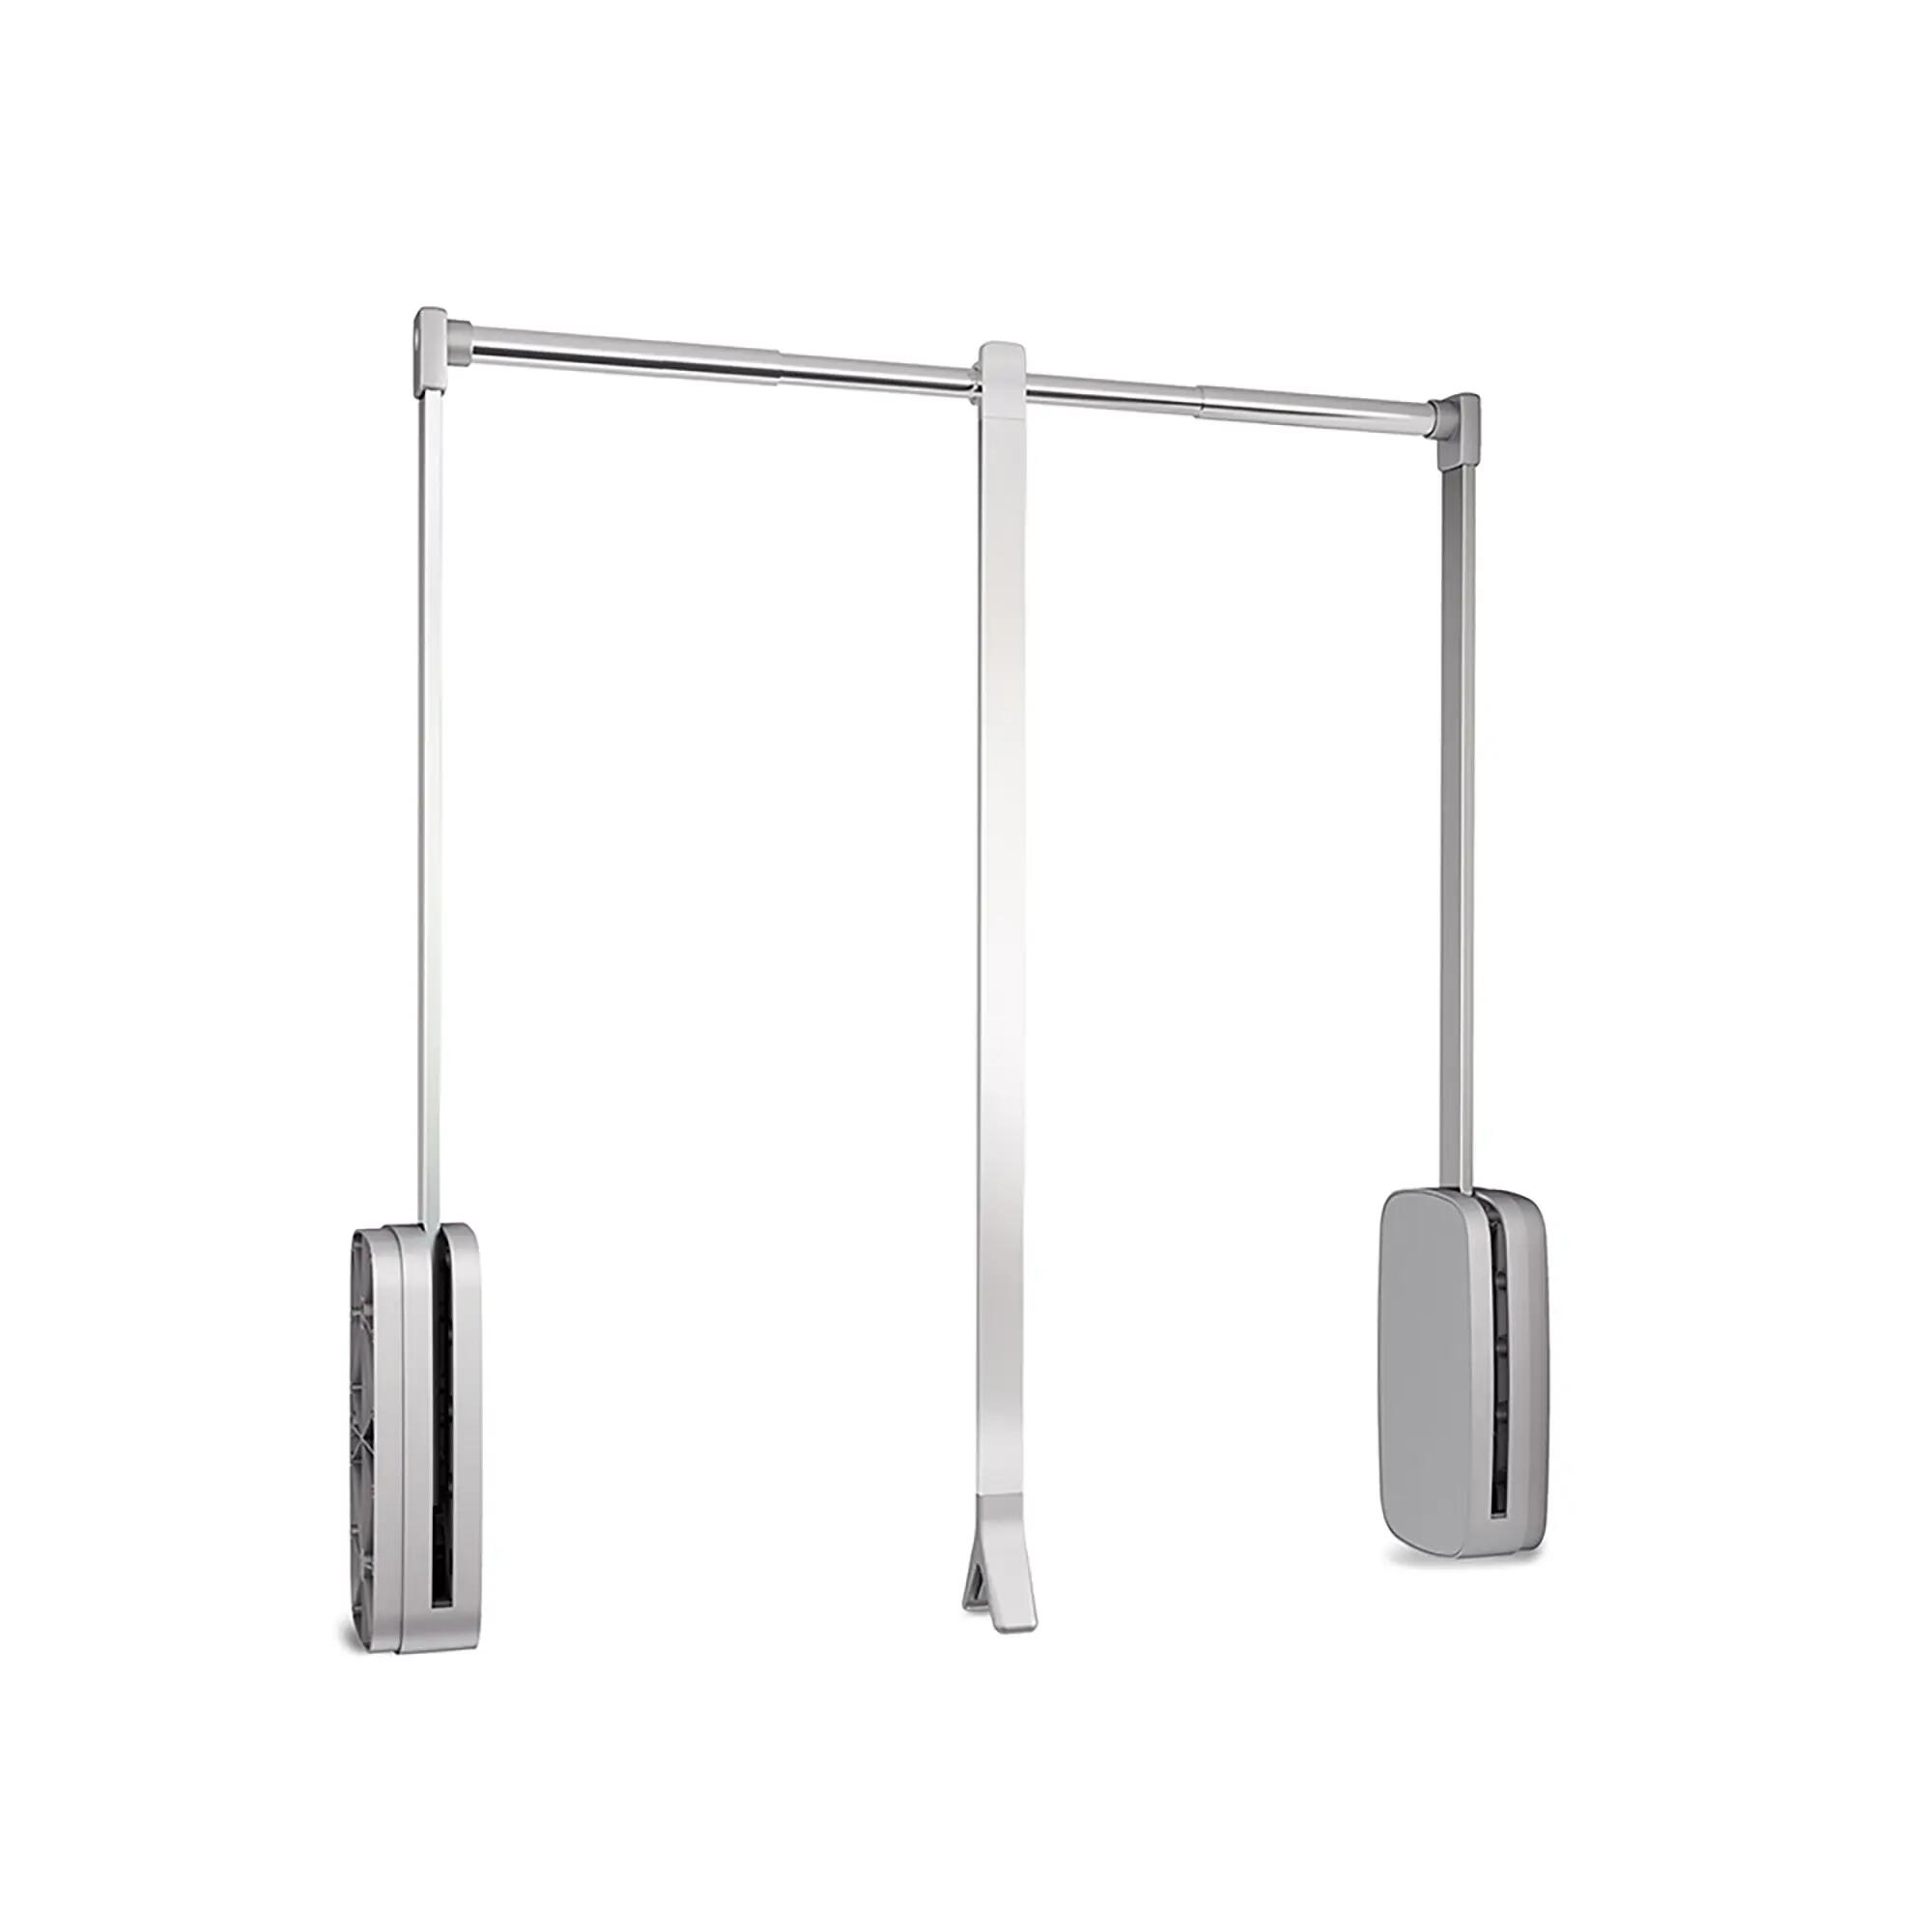 Colgador abatible sling aluminio para armario. ancho regulable 45-60cm